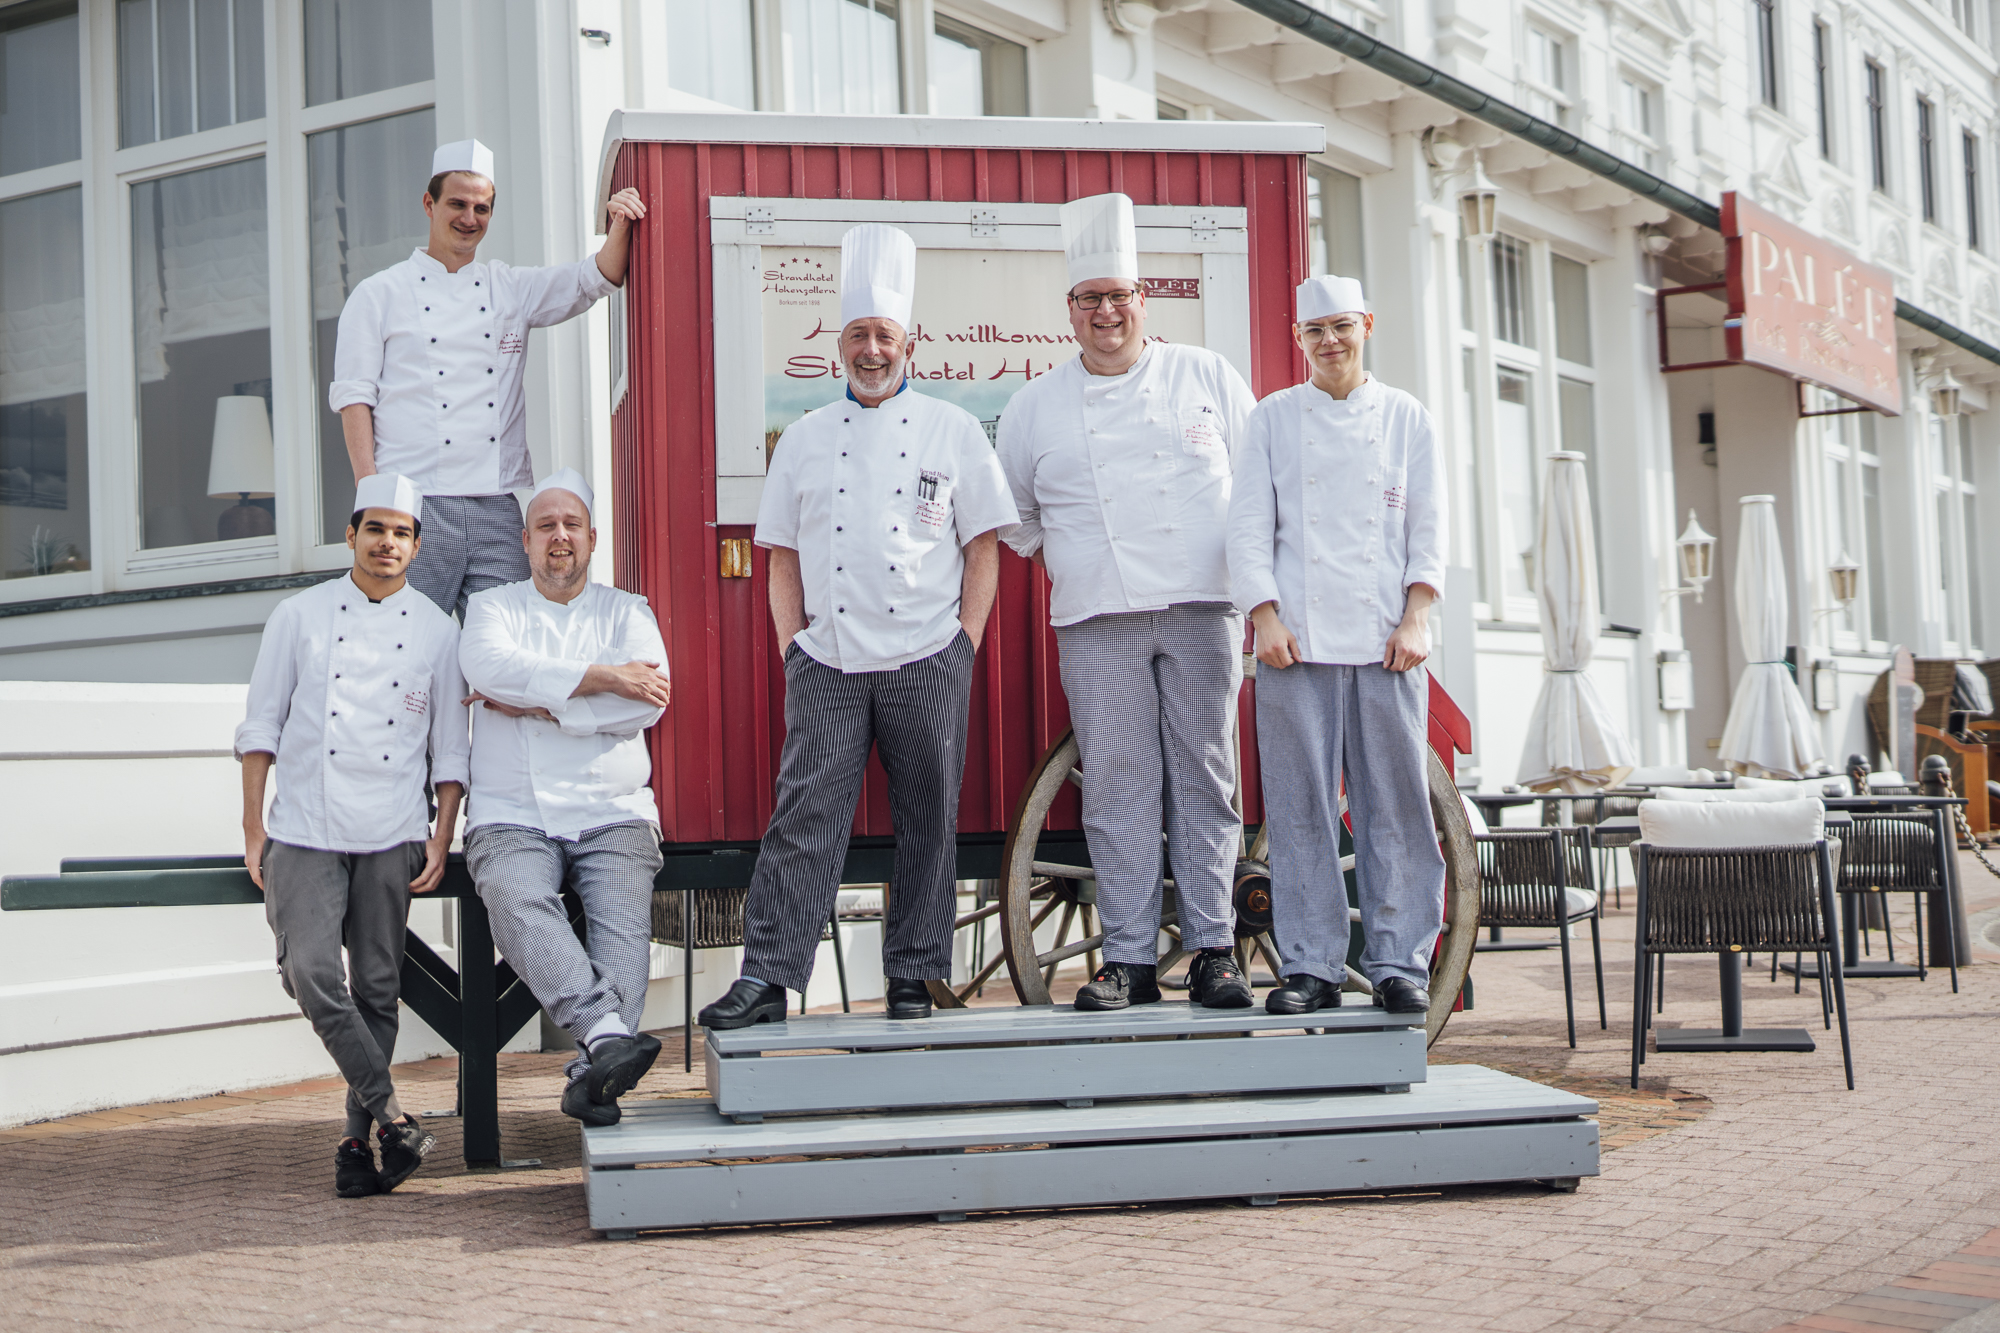 Die Küchencrew des "Palée" um Chefkoch Bernd Helm (4. v. l.) möchte möglichst viele Geschmäcker erreichen. PR-Foto 